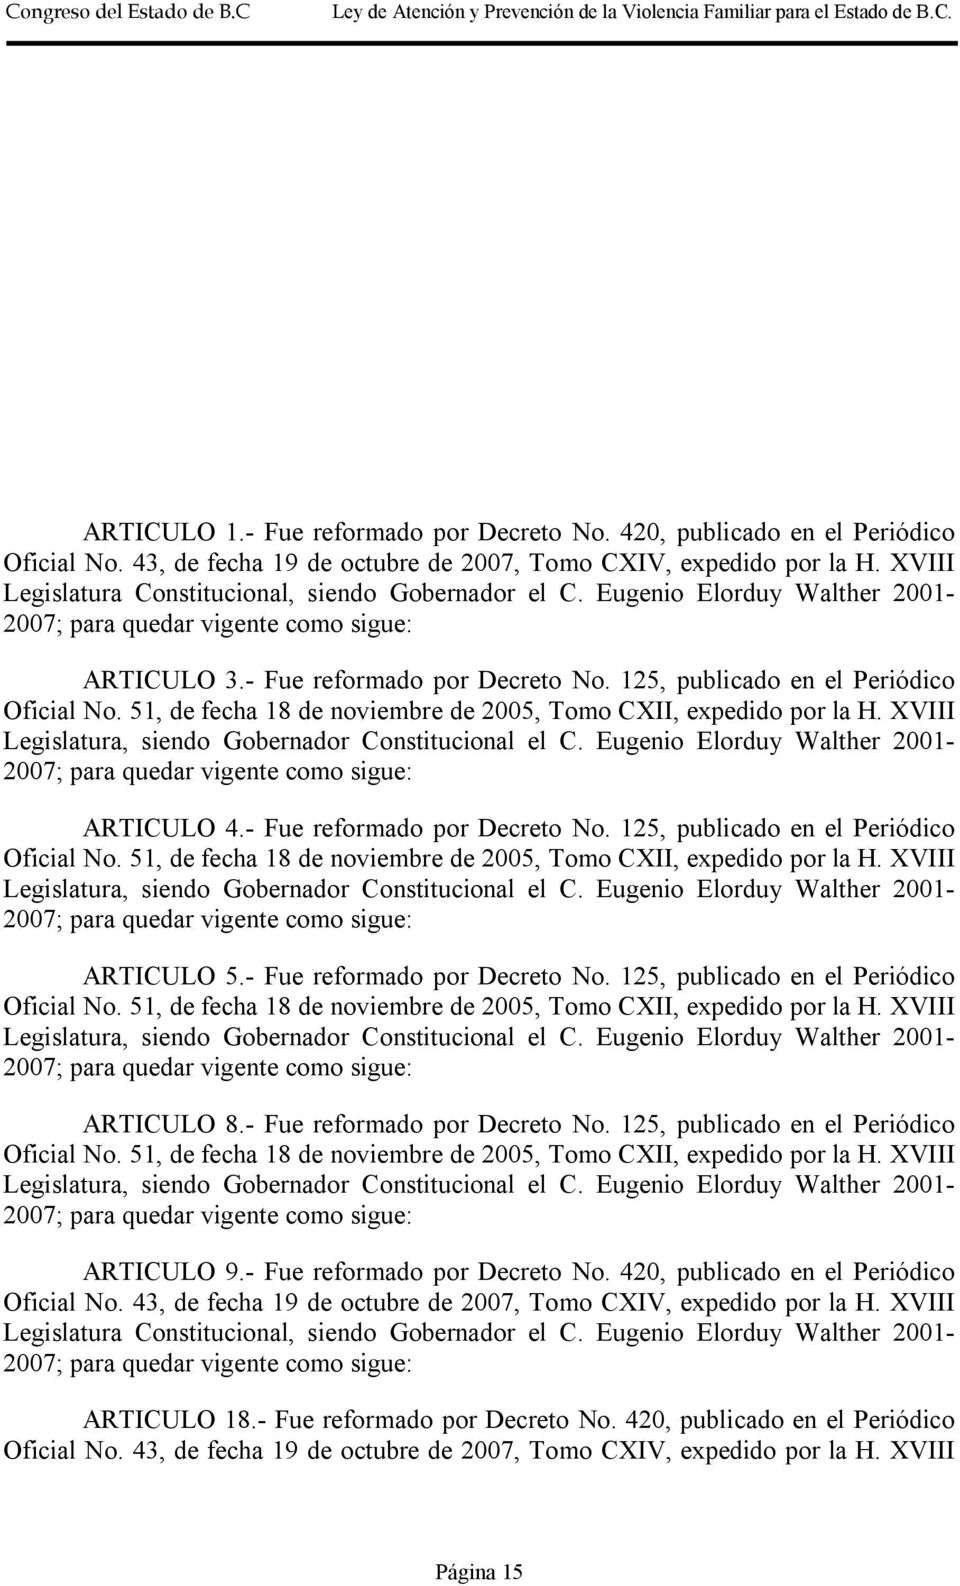 51, de fecha 18 de noviembre de 2005, Tomo CXII, expedido por la H. XVIII Legislatura, siendo Gobernador Constitucional el C. Eugenio Elorduy Walther 2001- ARTICULO 4.- Fue reformado por Decreto No.